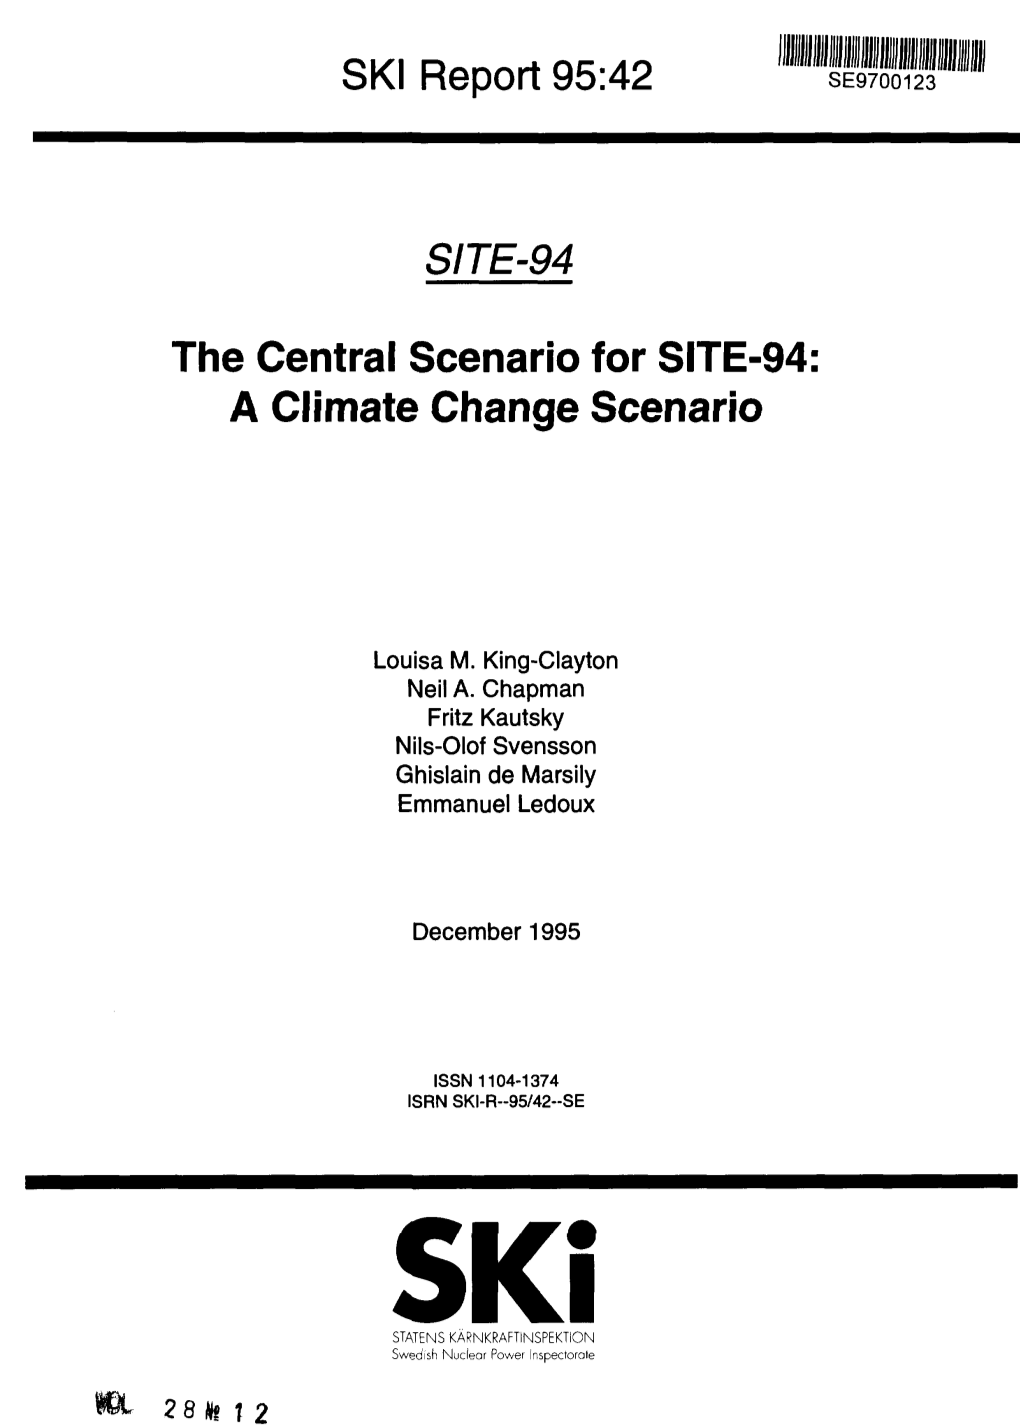 SKI Report 95:42 SITE-94 the Central Scenario for SITE-94: a Climate